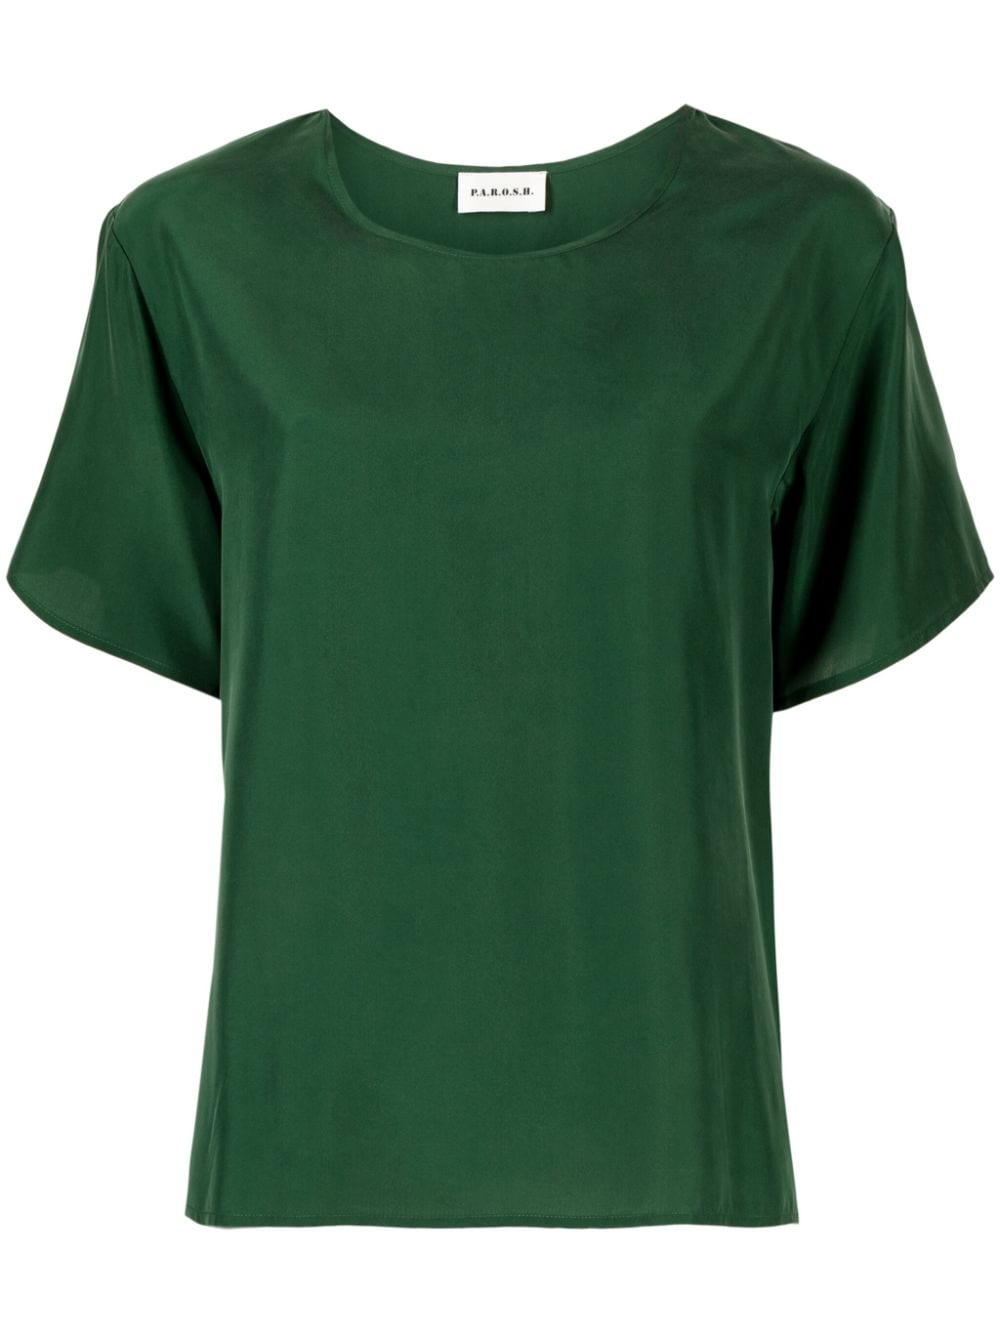 P.A.R.O.S.H. side-slits silk T-shirt - Green von P.A.R.O.S.H.